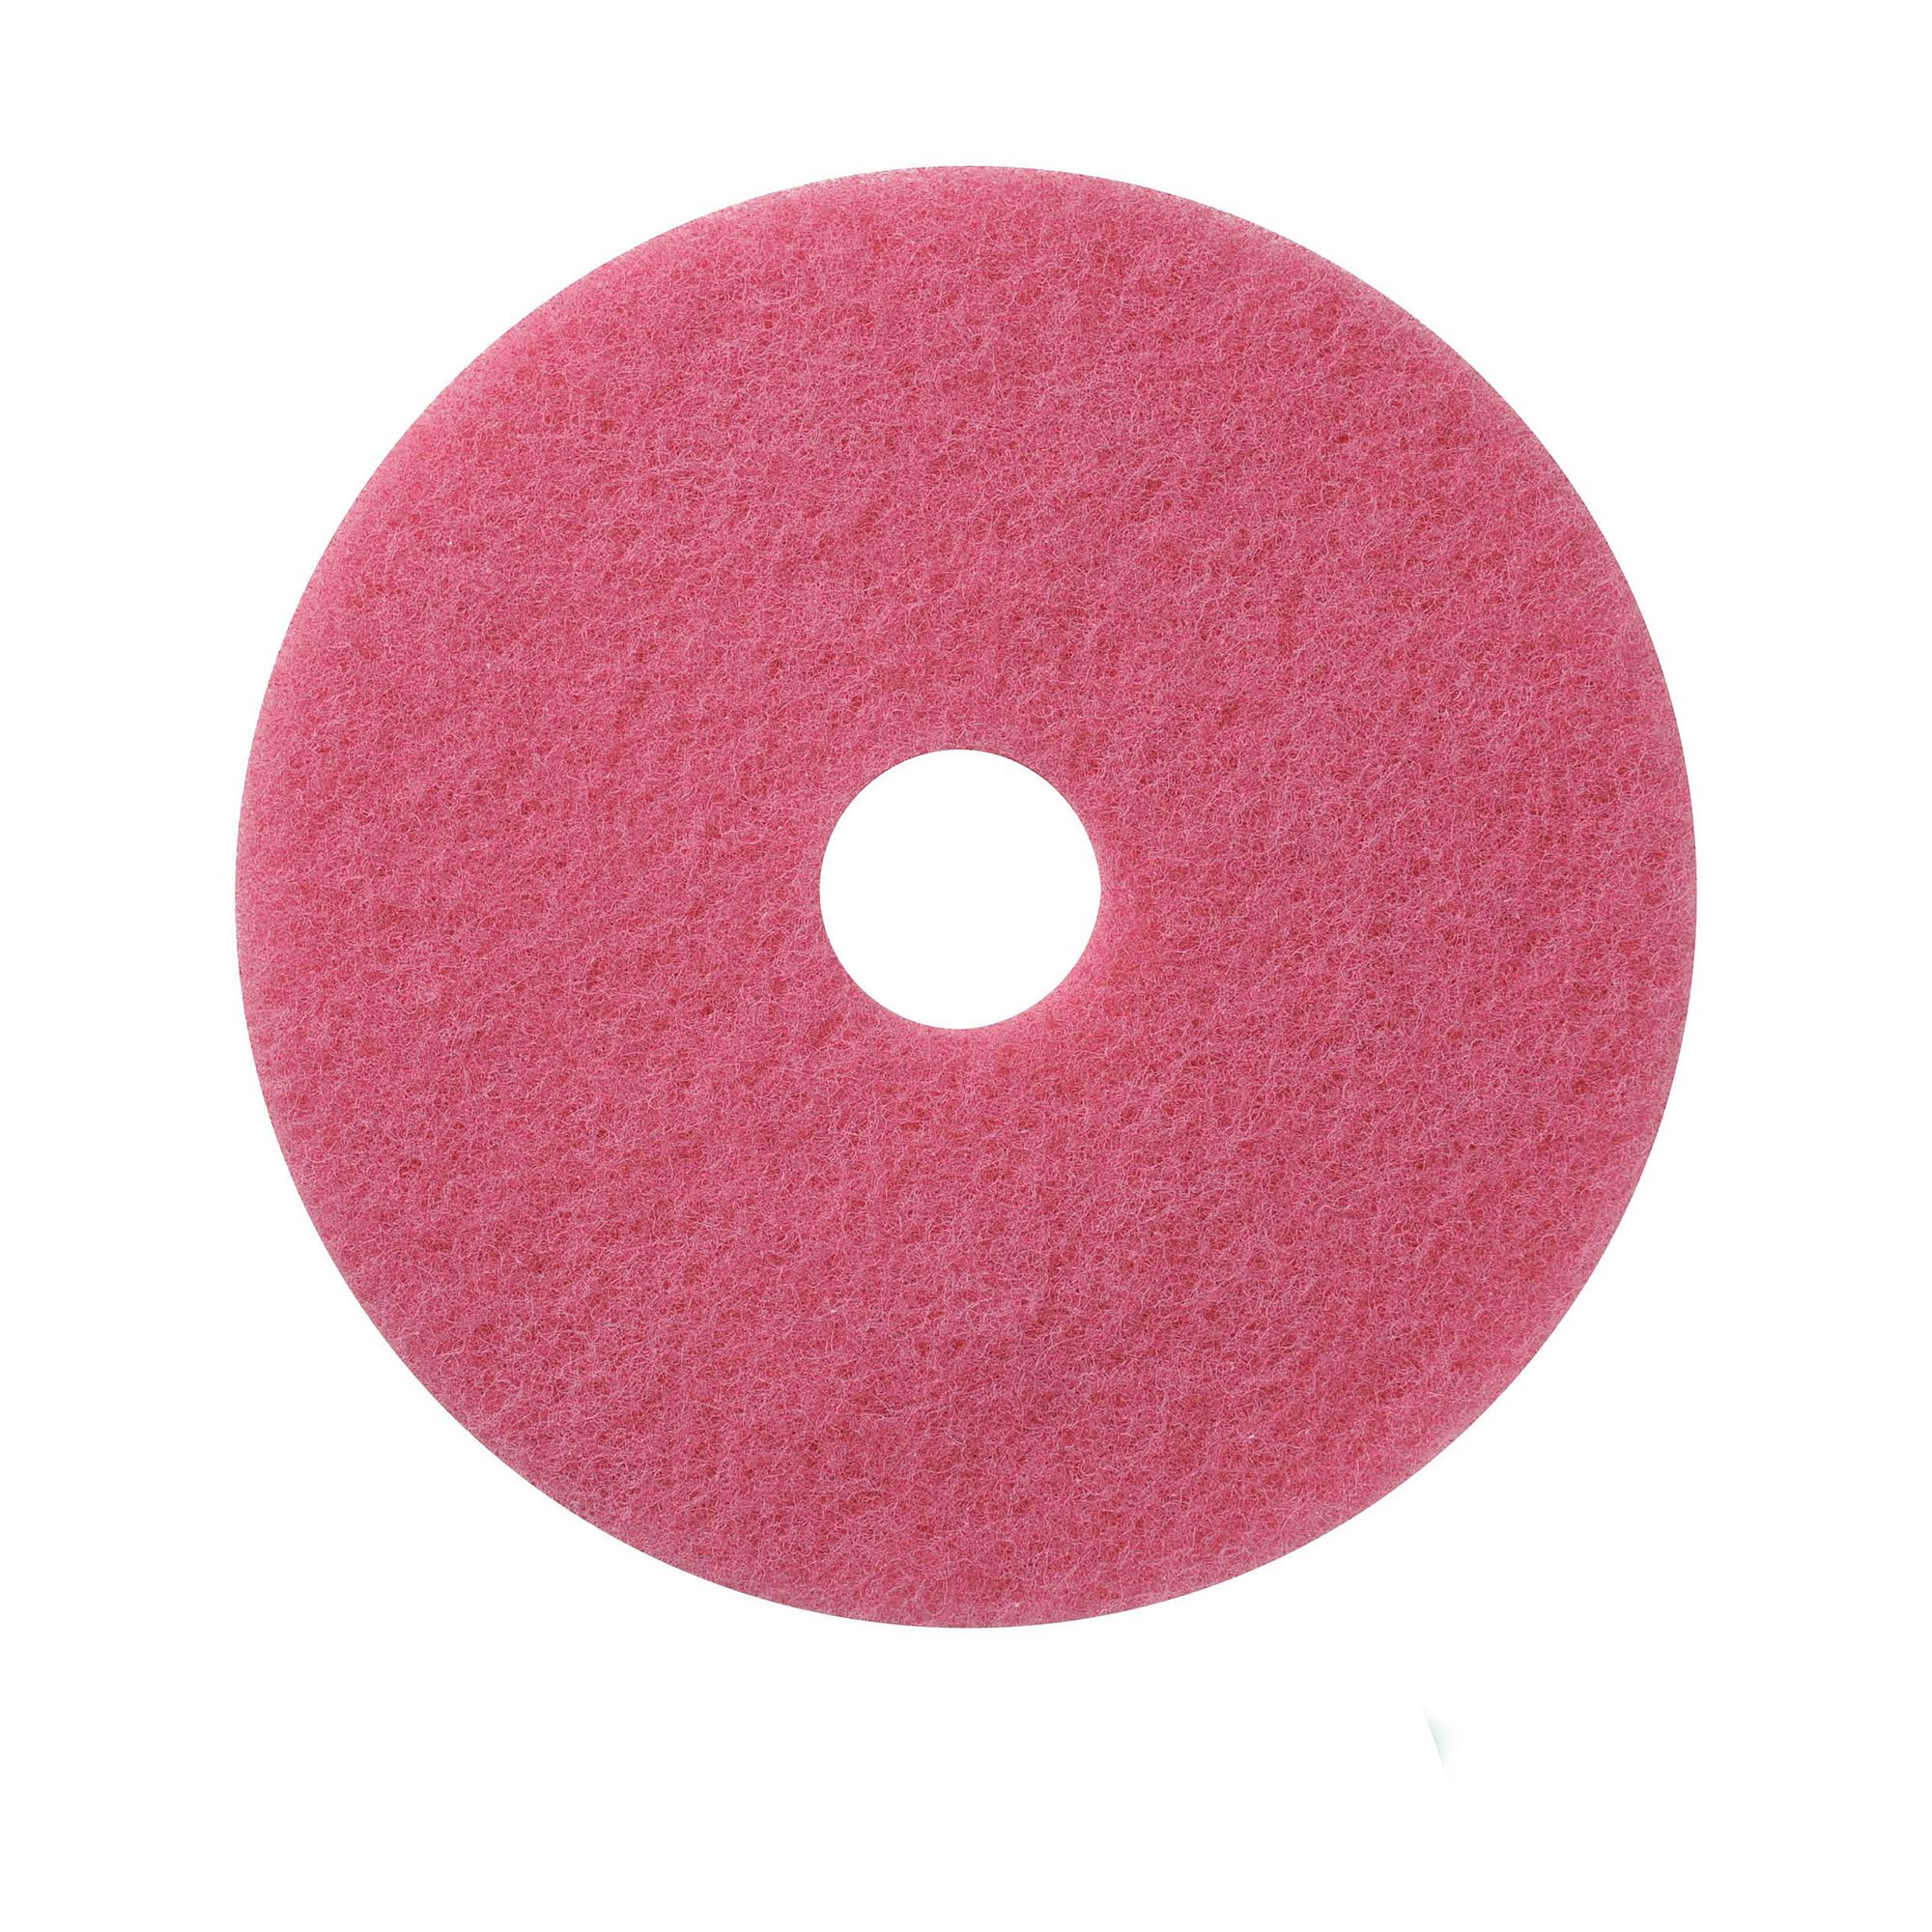 NuPad roze (schrobben), per 5 stuks, 20 inch / 508 mm